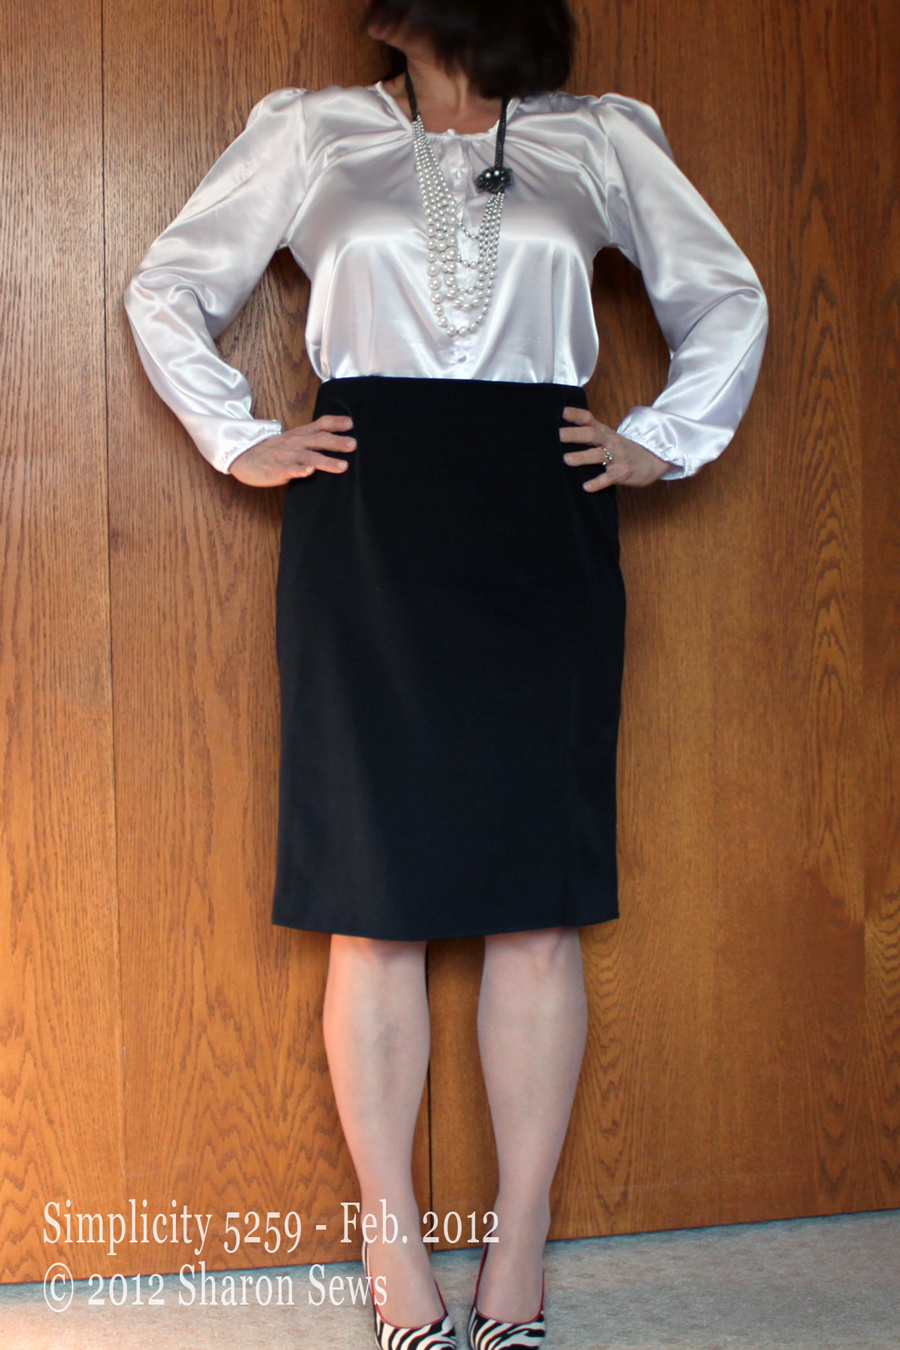 Sharon Sews: A little black skirt - Simplicity 5259